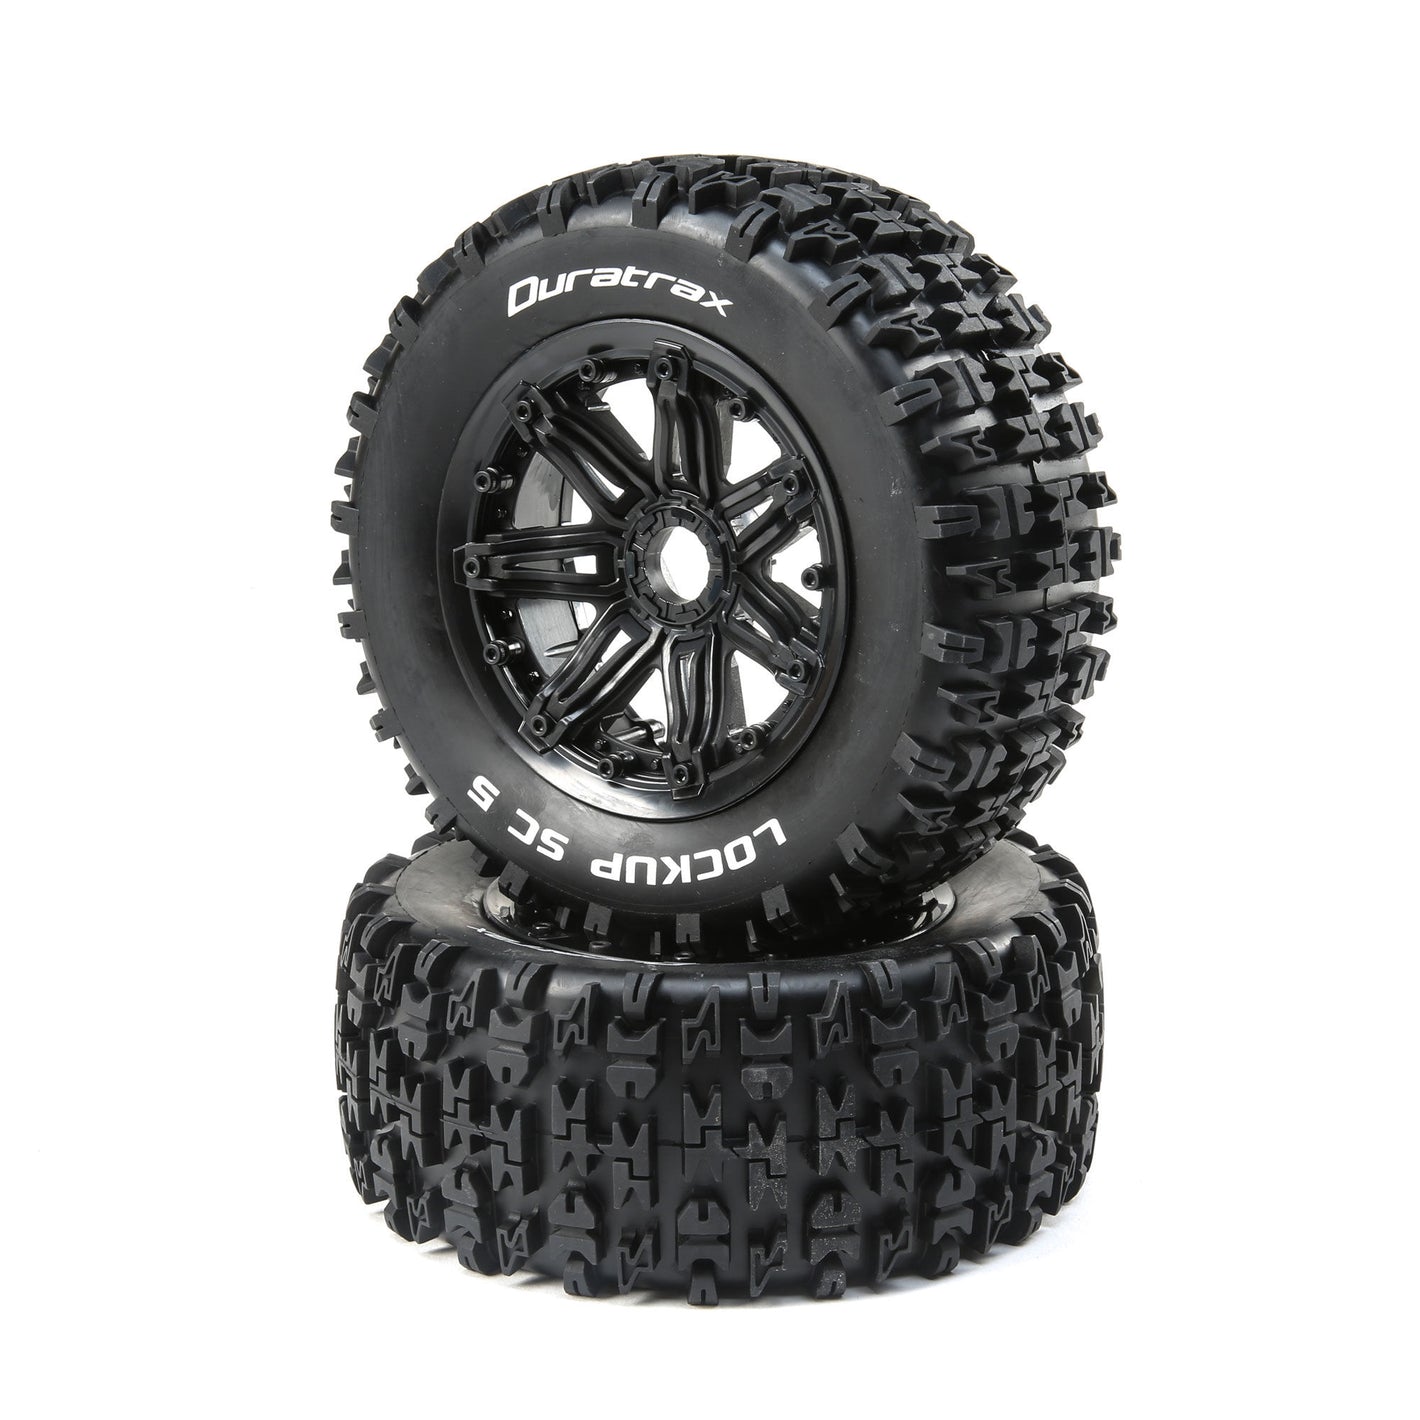 DuraTrax Lockup 1/5 SC Sport Mounted Black Tires 24mm (2) DTXC5032